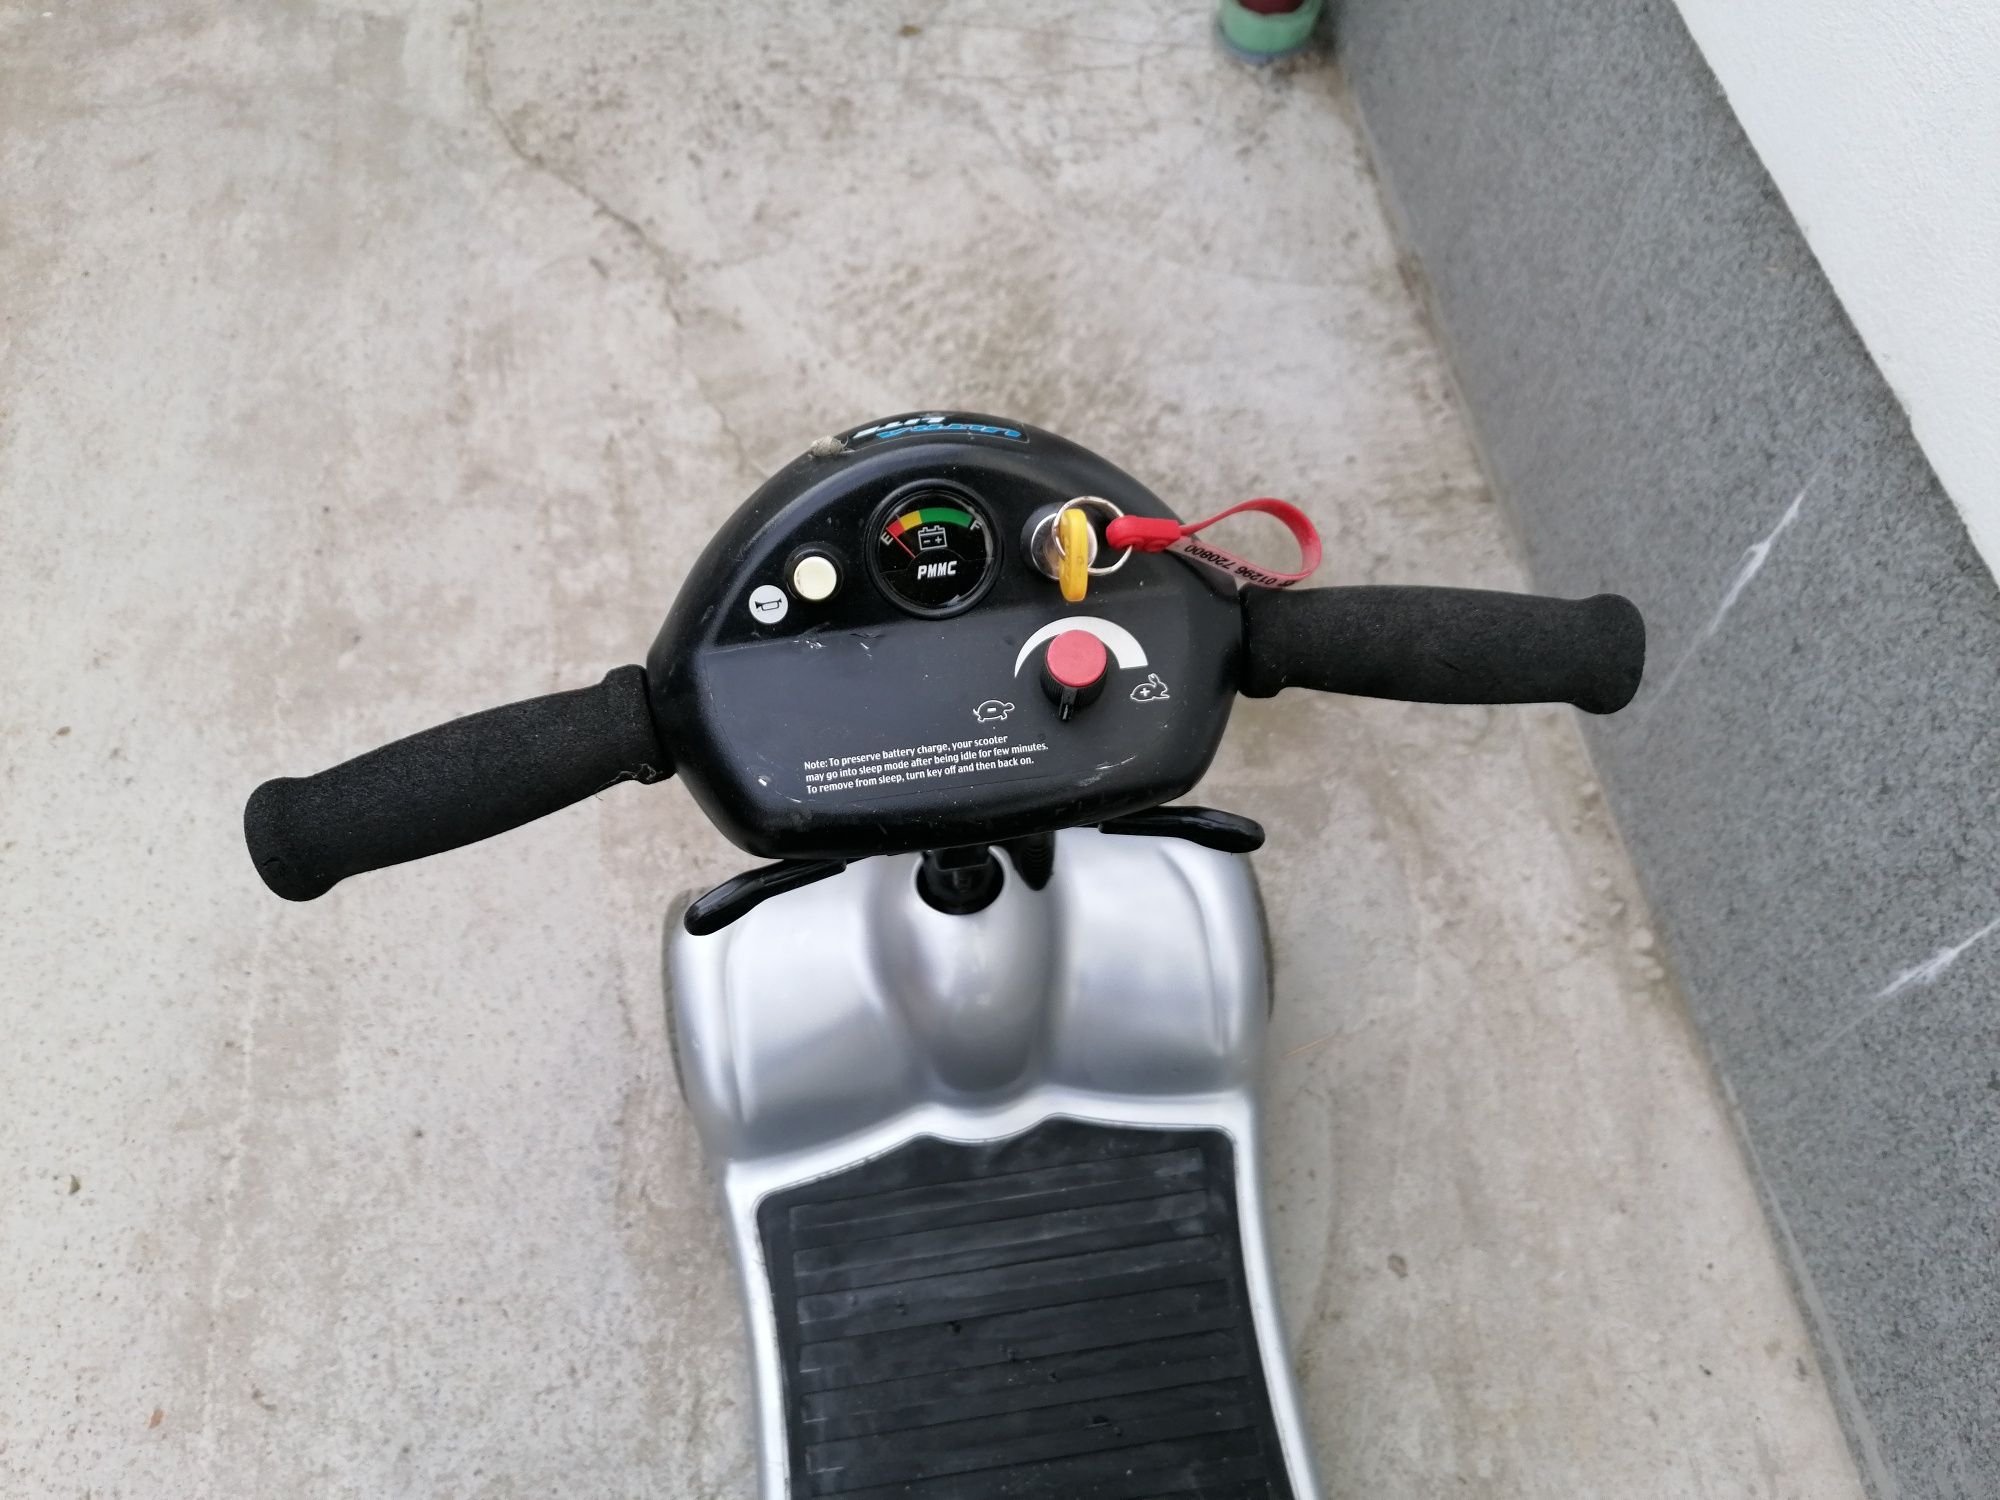 Cărucior scuter electric pentru persoane cu dizabilități